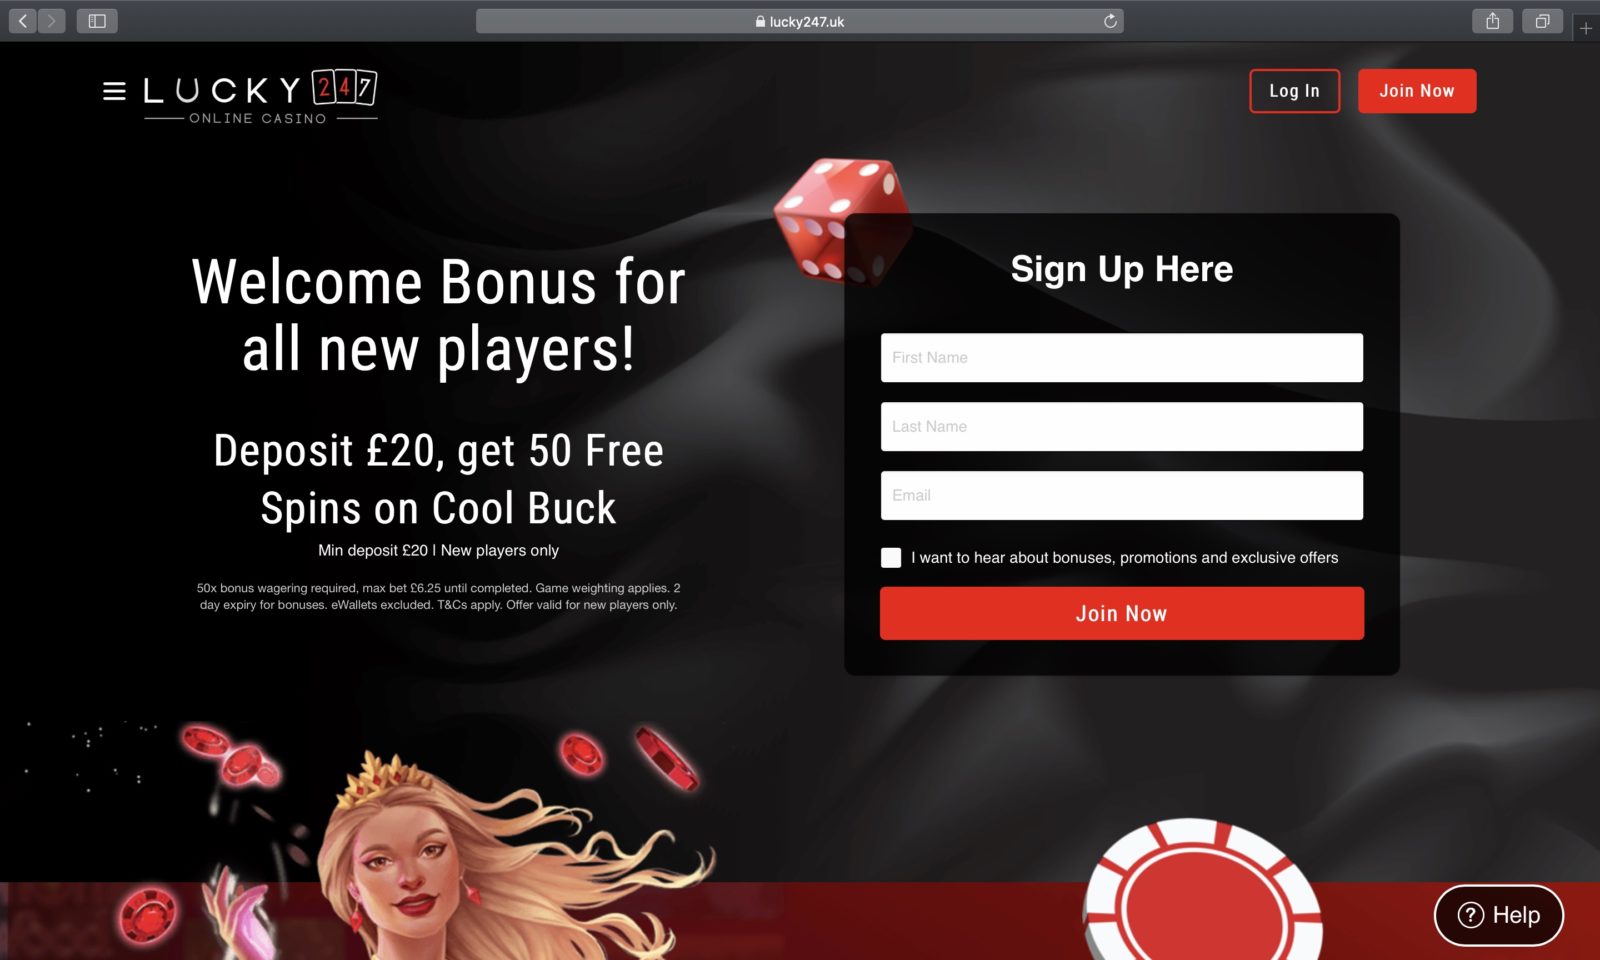 melhores sites de casino online